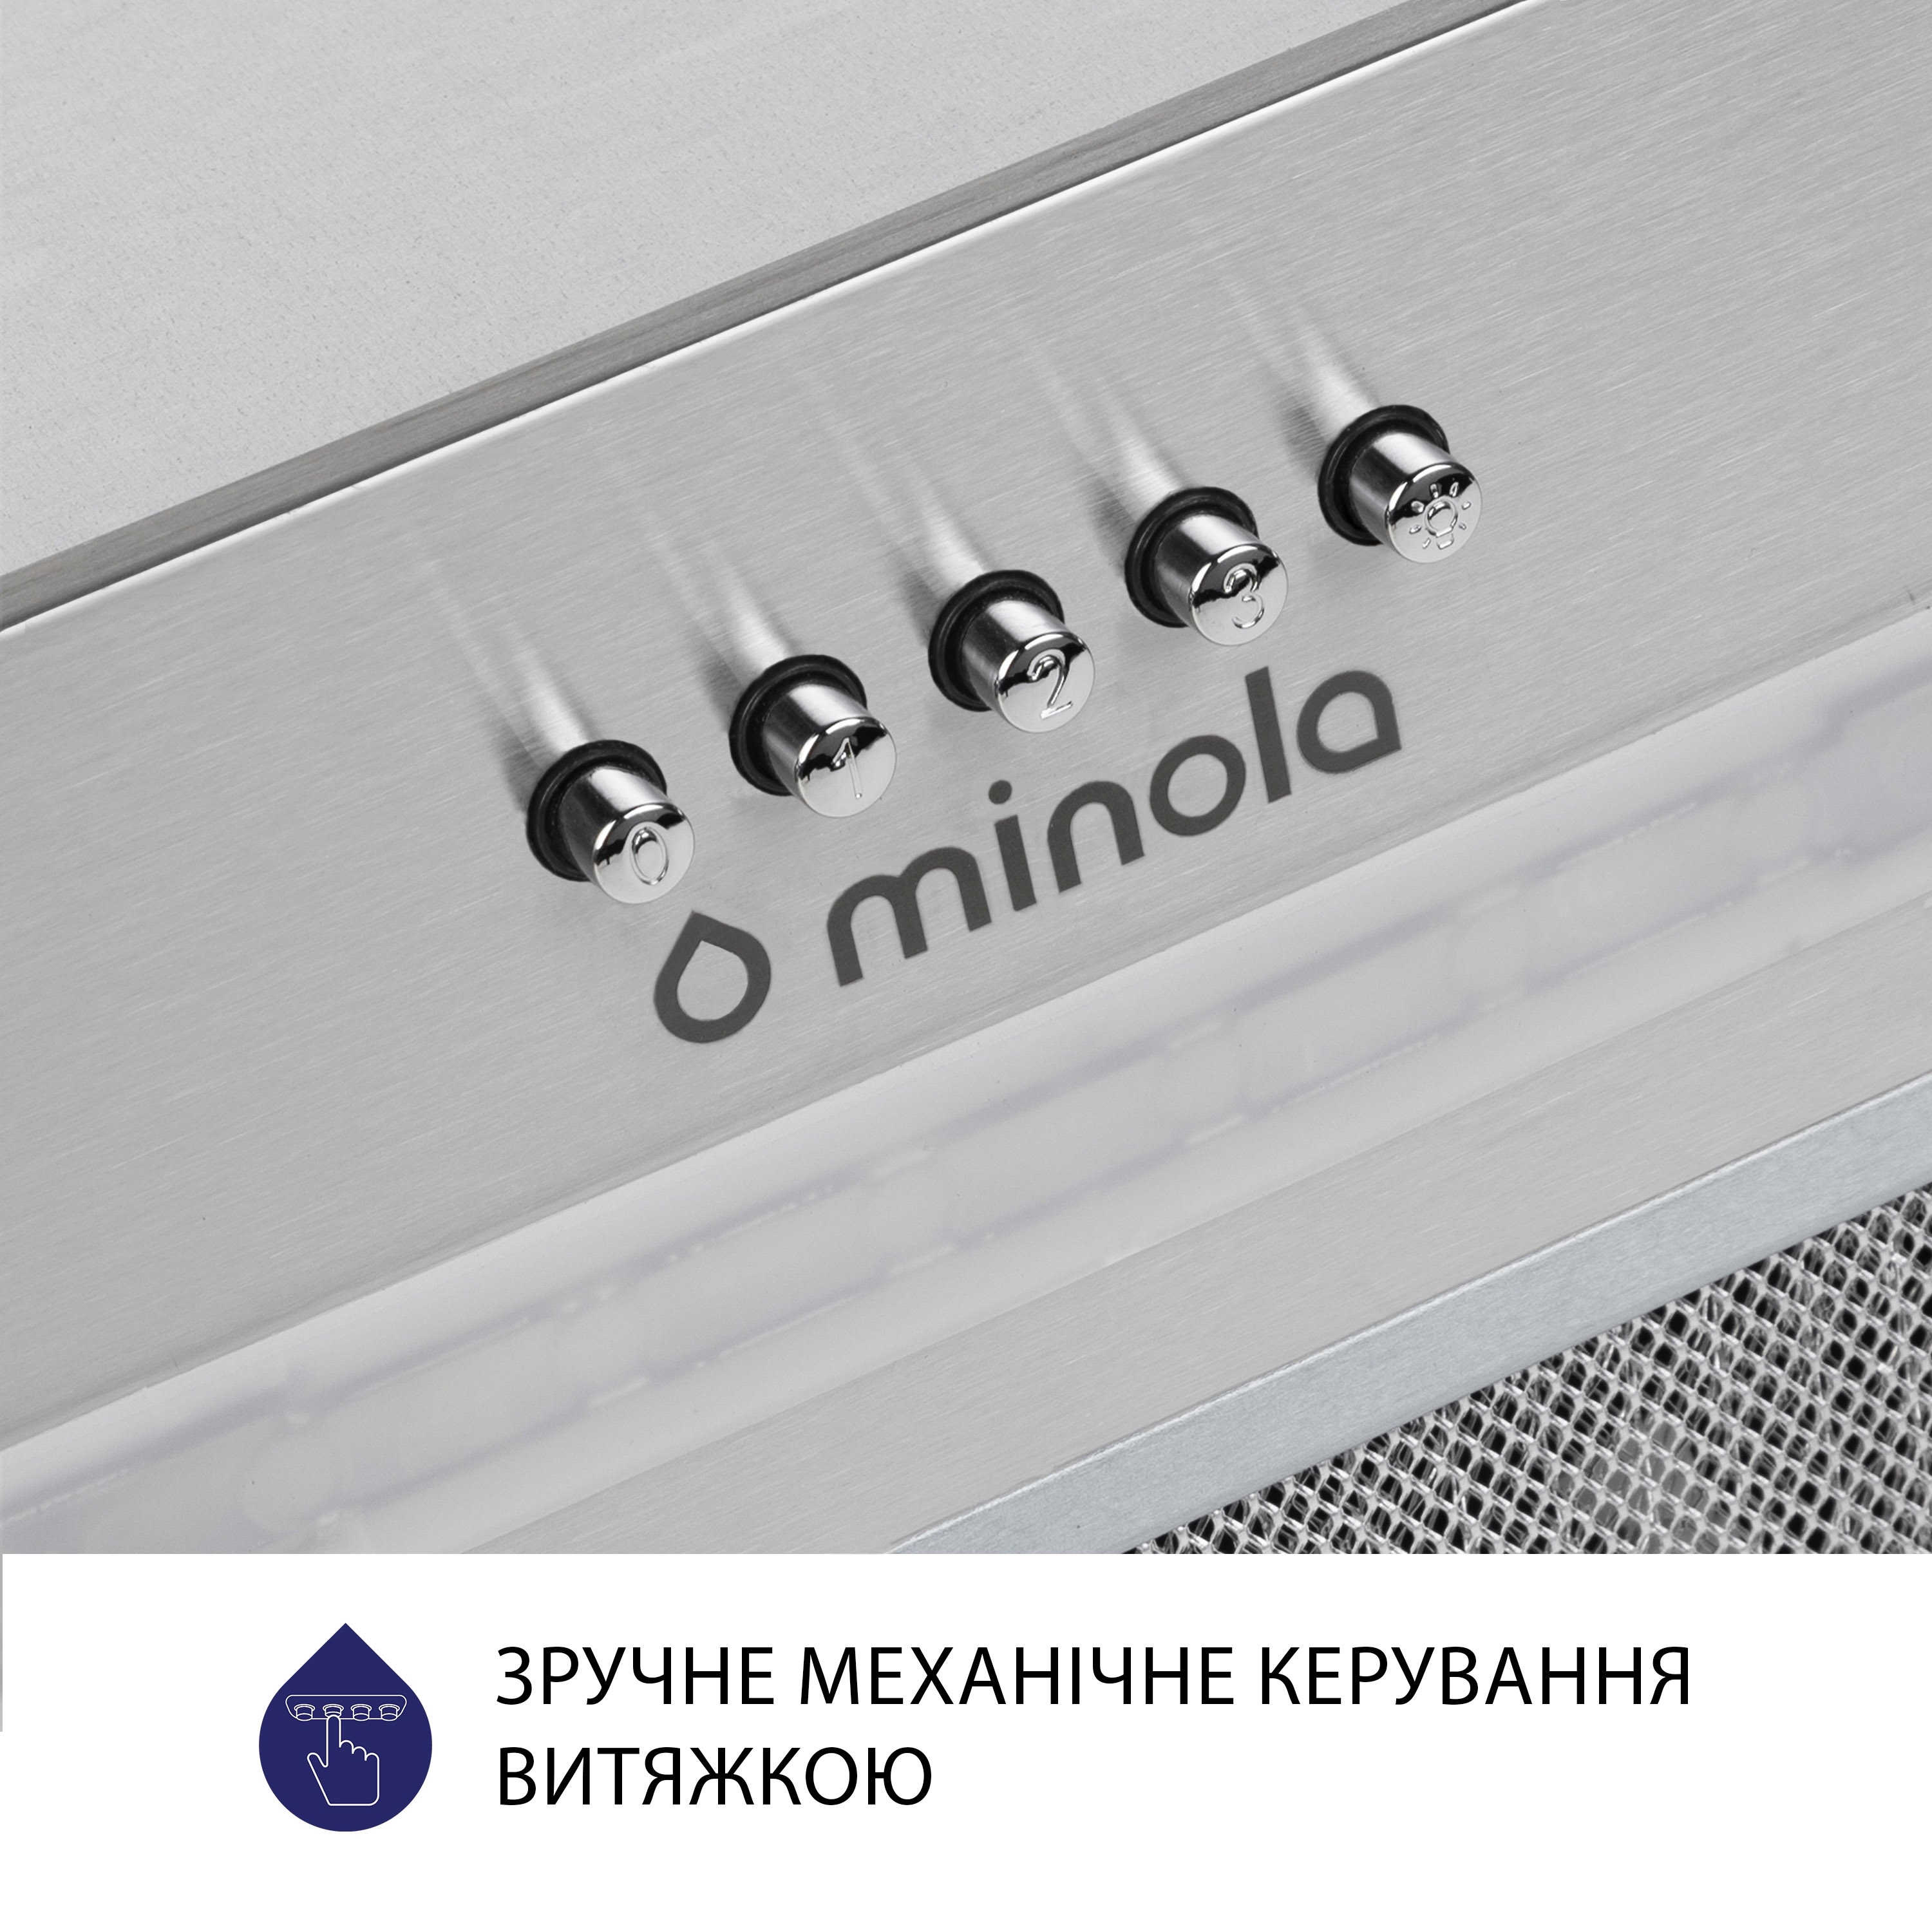 Витяжка кухонная полновстраиваемая Minola HBI 5323 I 800 LED инструкция - изображение 6